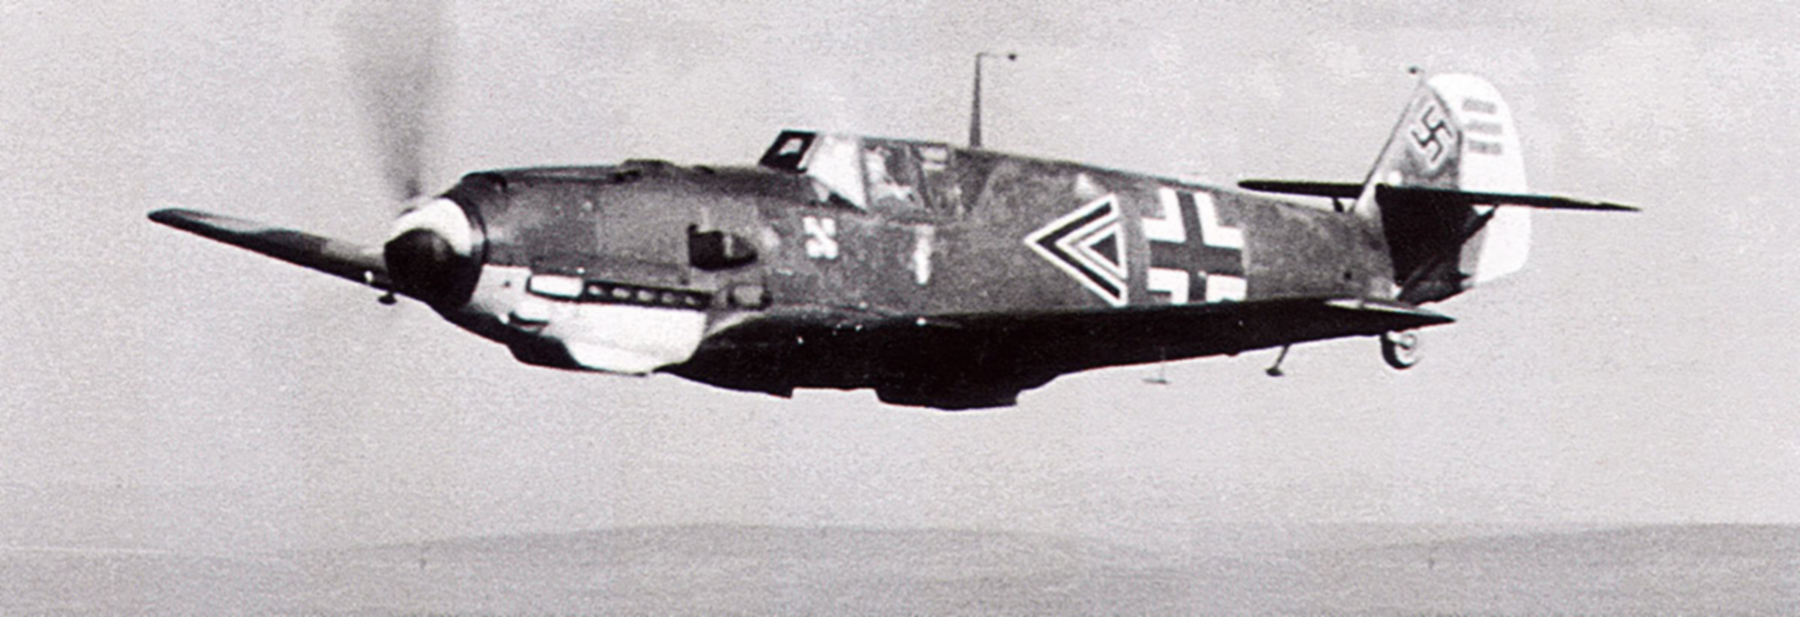 Messerschmitt Bf 109E7 Stab III.JG5 Gunther Scholz Petsamo Finland 1942 03